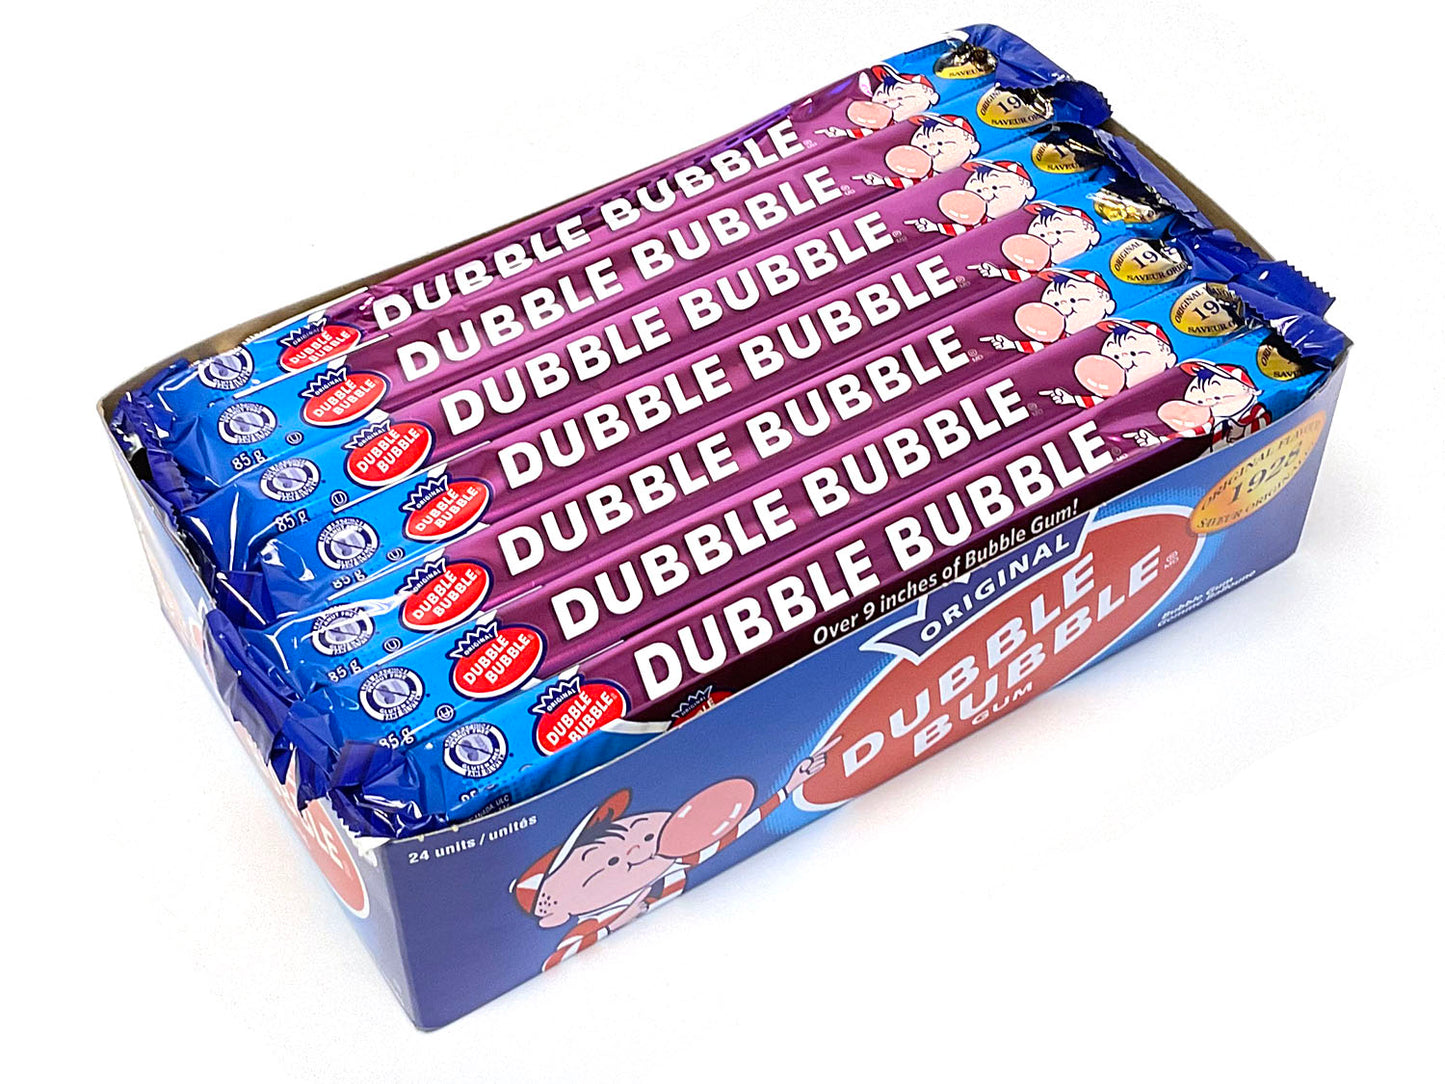 Dubble Bubble Gum - 3 oz Big Bar (1928 flavor) - box of 24